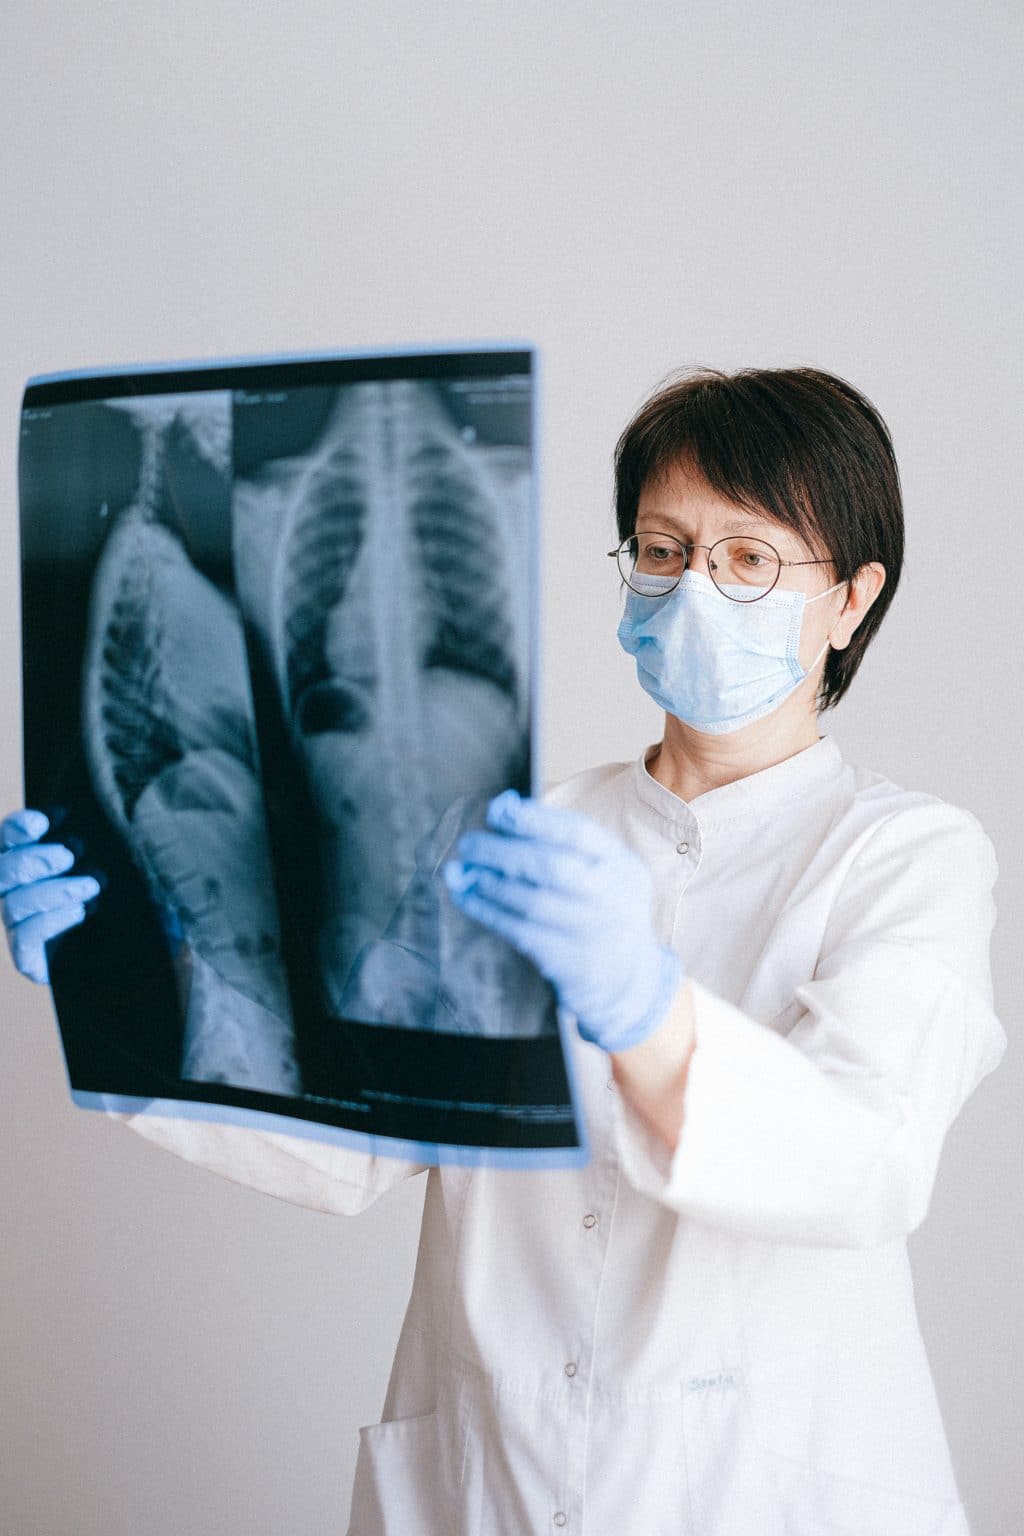 Cisztás fibrózis: Tünetek, diagnózis, kezelés és prognózis